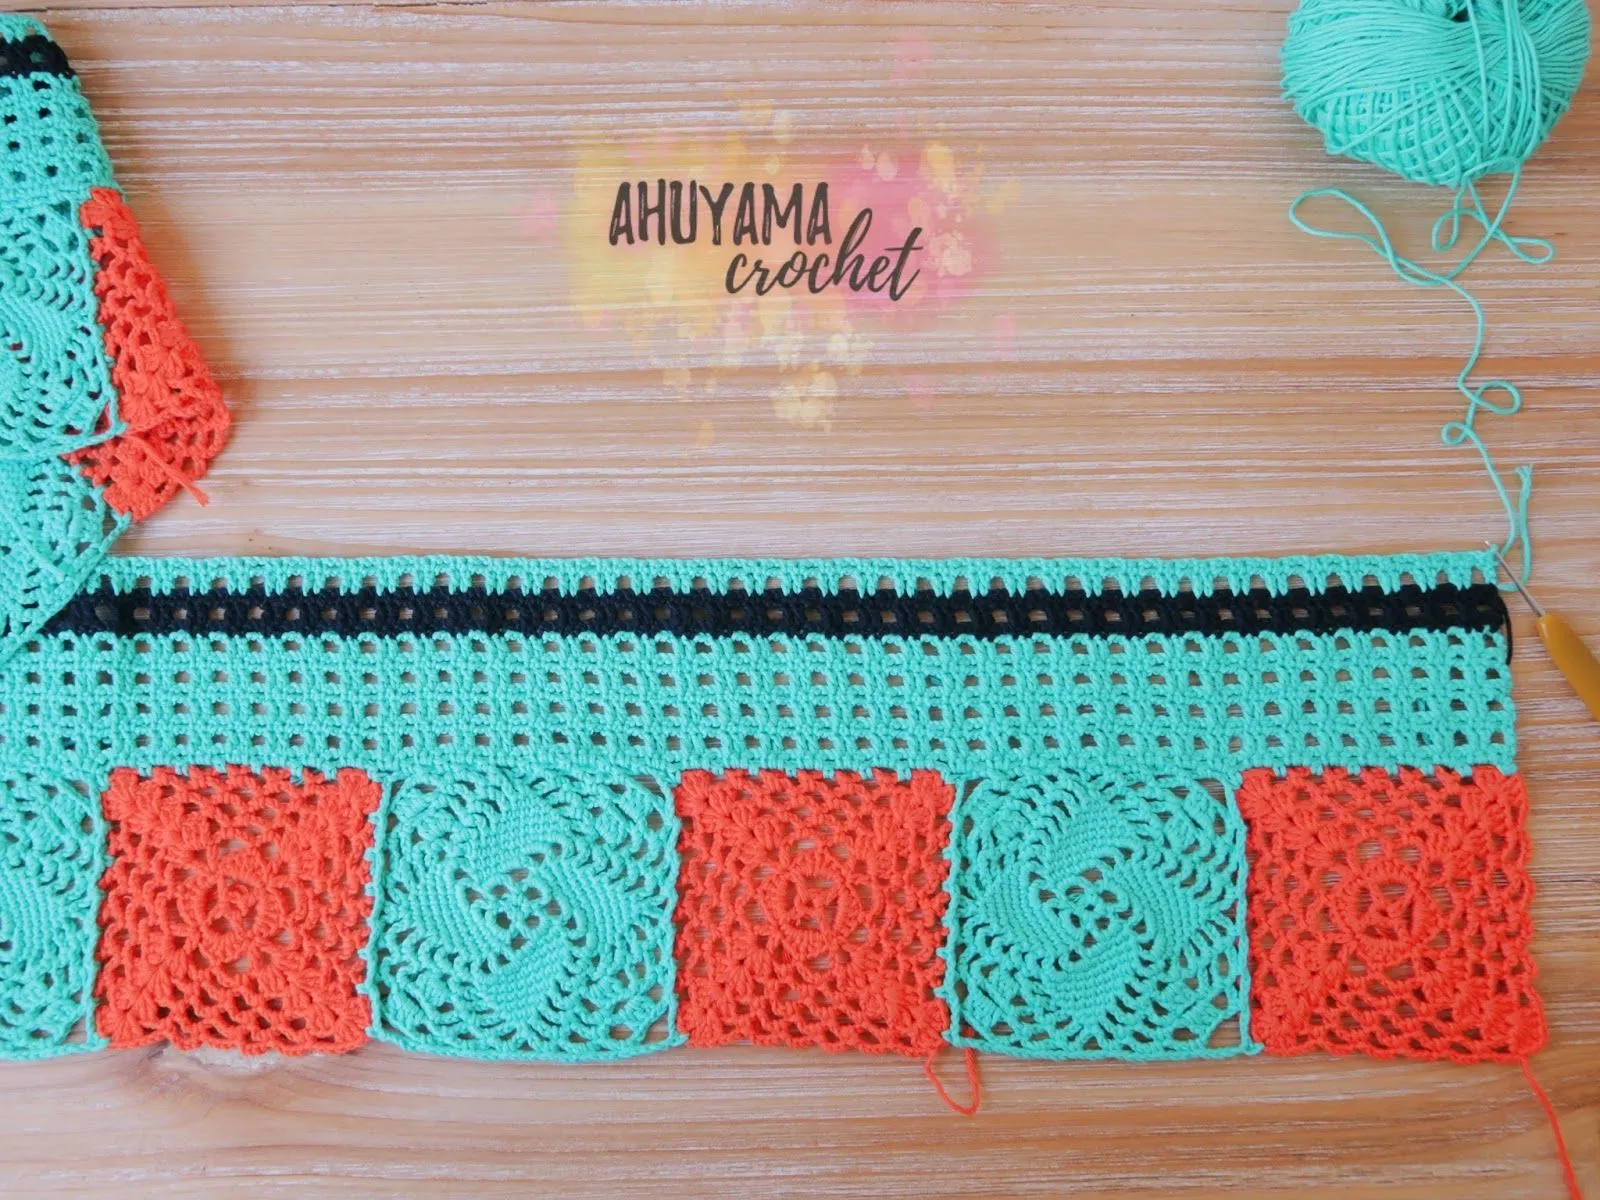 LAS CORTINAS DE MIS SUEÑOS - CLASE 3 - Ahuyama Crochet